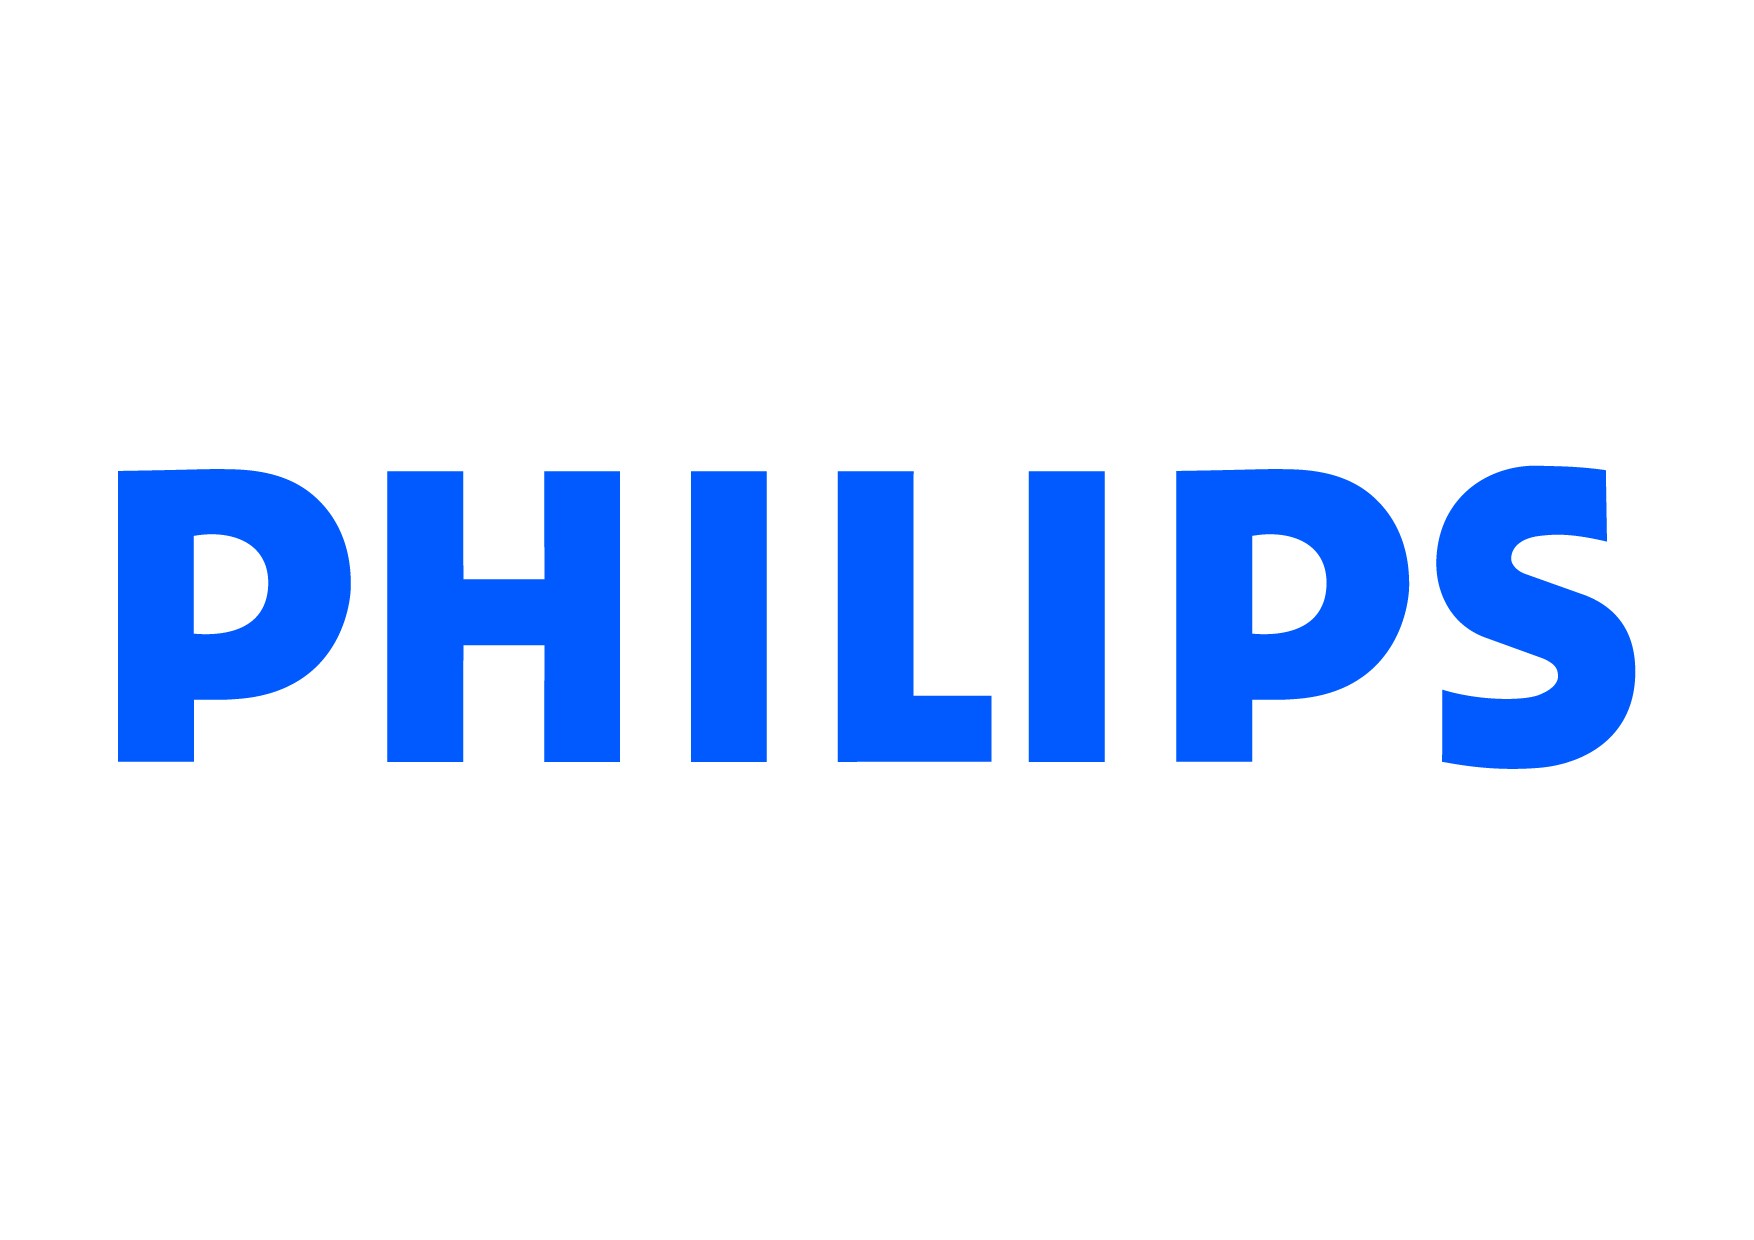 Nhãn hiệu Philips được thành lập năm 1891 tại Hà Lan, bởi Anton và Gerard Philips. Qua nhiều năm phát triển, Philips đã và đang là nhãn hiệu điện tử uy tín hàng đầu và chiếm được lòng tin của nhiều khách hàng với các sản phẩm điện tử gia dụng cũng như các sản phẩm chăm sóc sức khỏe. Đặt mục tiêu nâng cao chất lượng cuộc sống, Philips luôn chú trọng tìm tòi và phát minh ra những sản phẩm điện tử công nghệ cao và chất lượng đảm bảo nhất để giới thiệu đến người tiêu dùng.